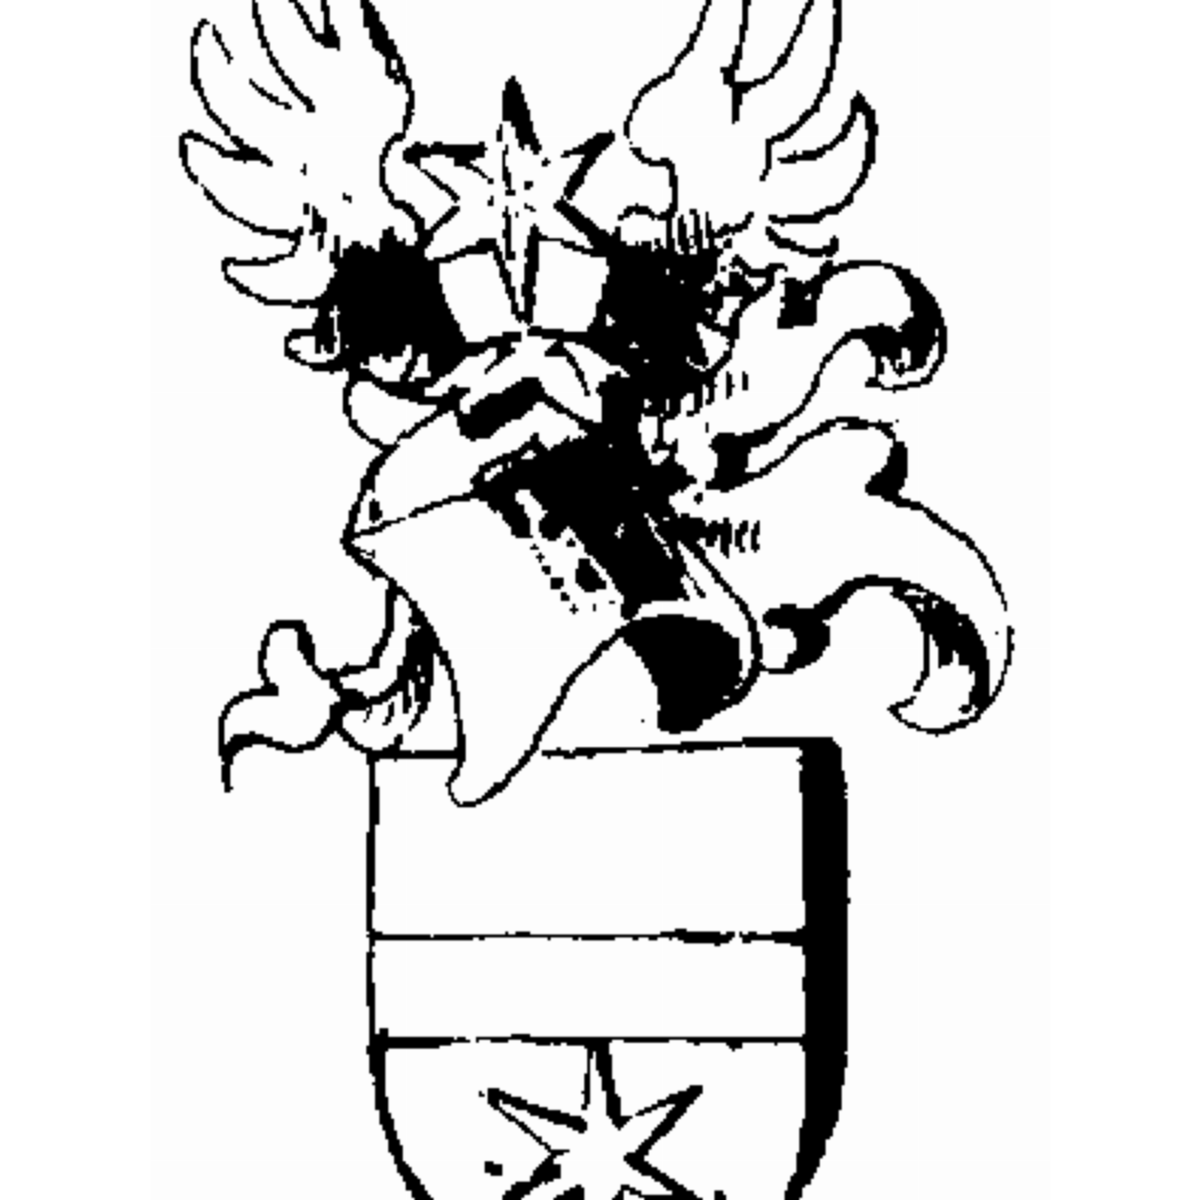 Wappen der Familie Gabriel